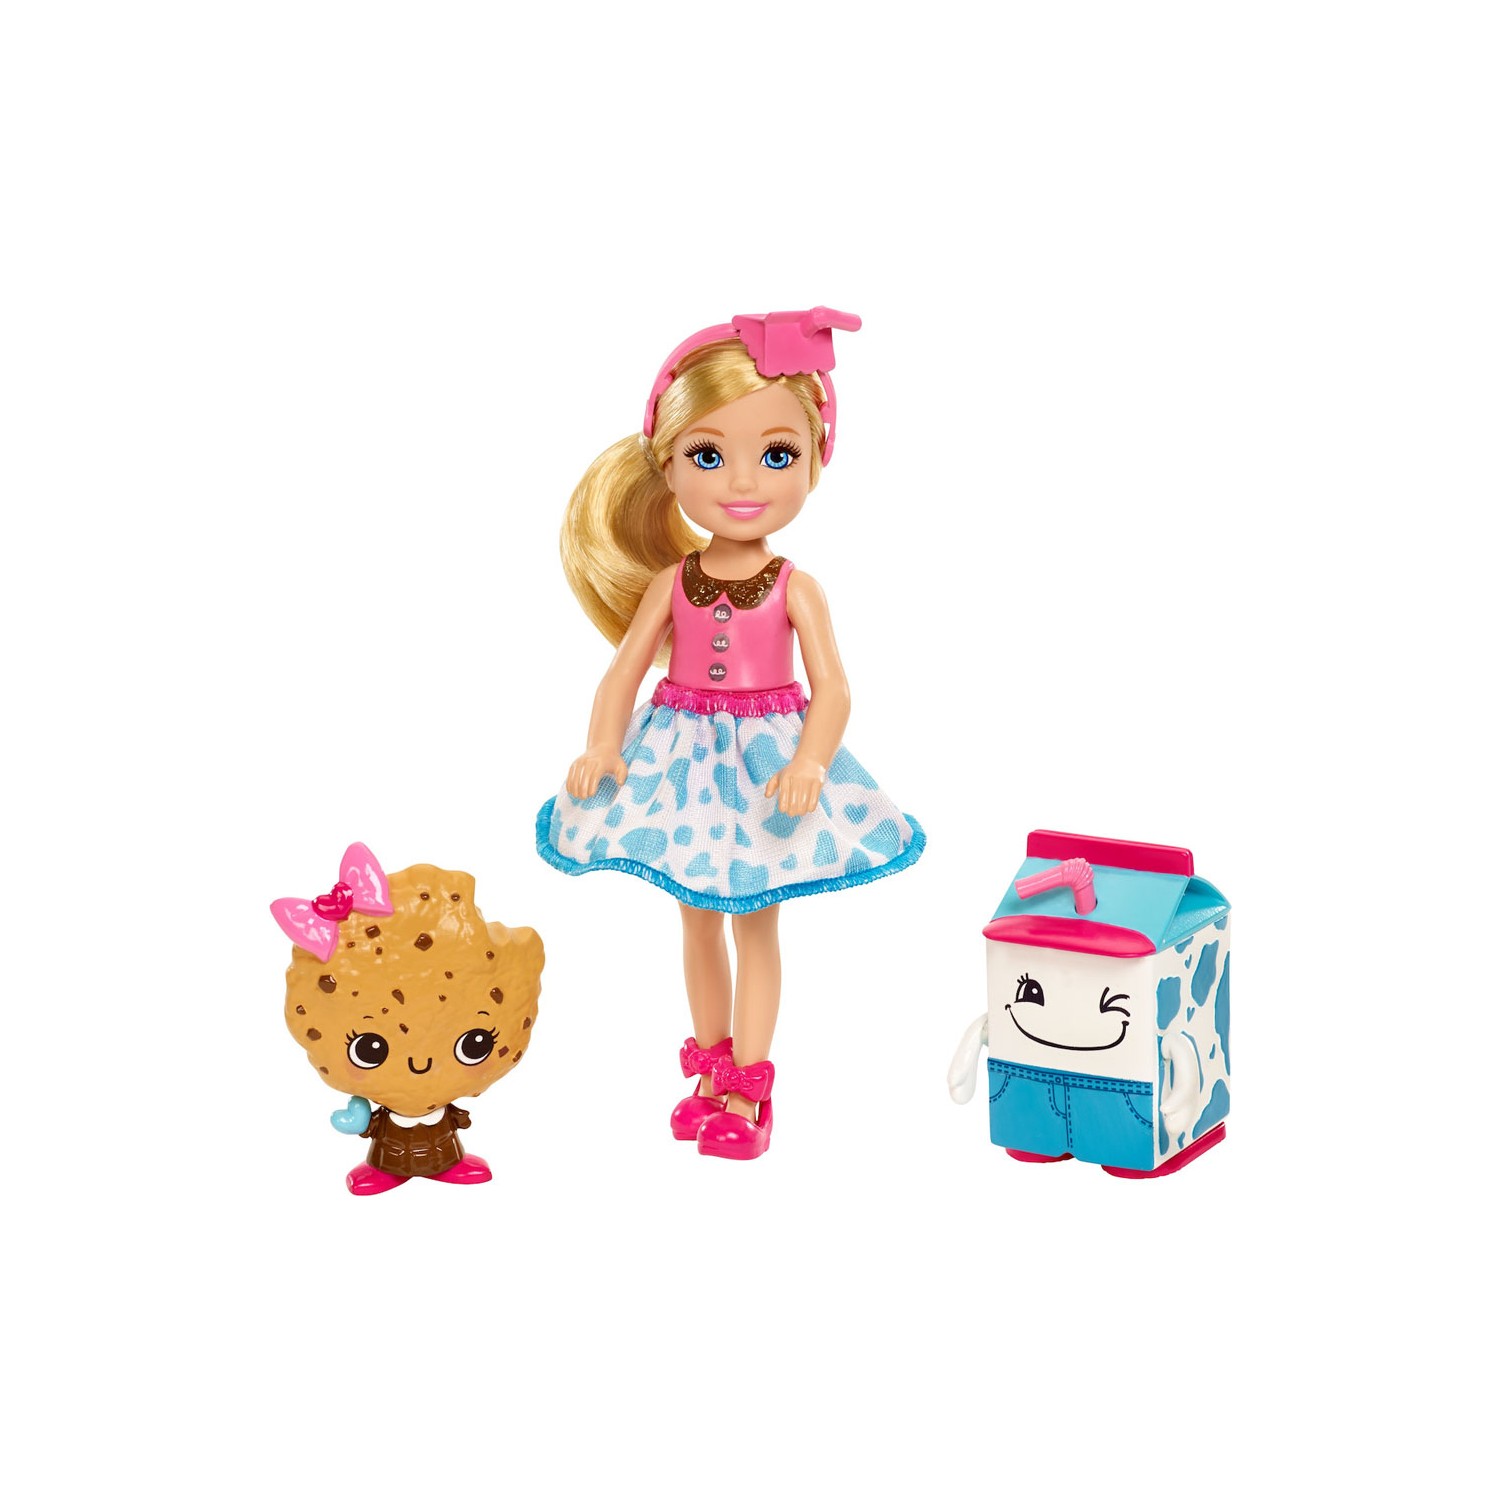 Кукла Barbie Dreamtopia Chelsea and its 2 Cute Friends Fdj11 жидкий чехол с блестками cute and sadistic на samsung galaxy j8 самсунг галакси джей 8